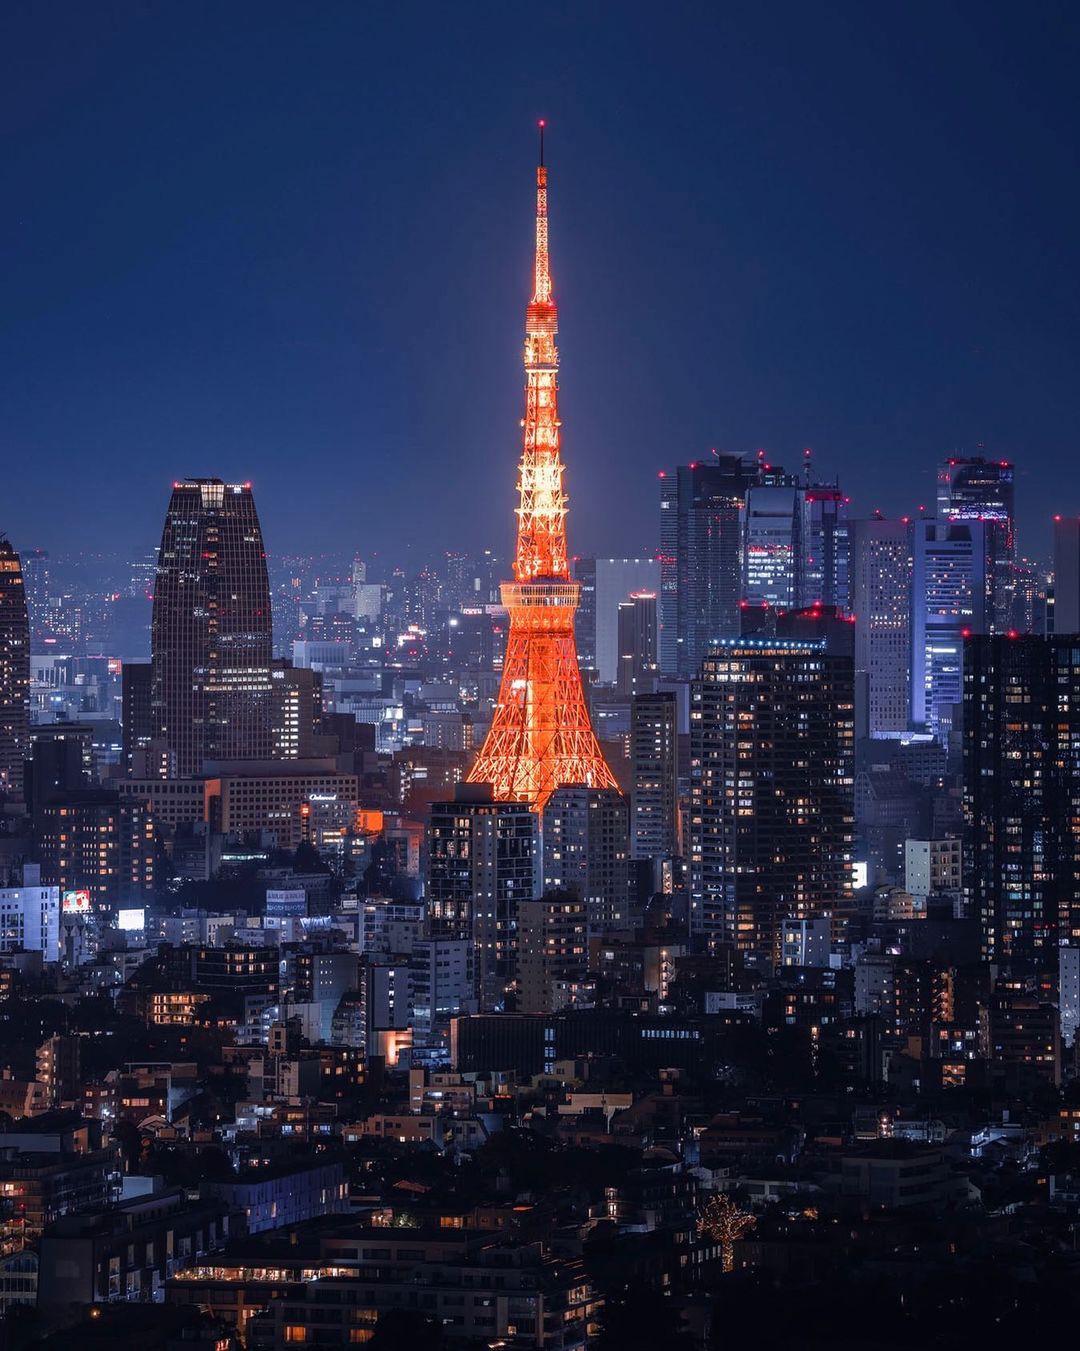 Tháp Tokyo, một trong những địa điểm nổi tiếng của Tokyo. Ảnh: @ timliu_319.